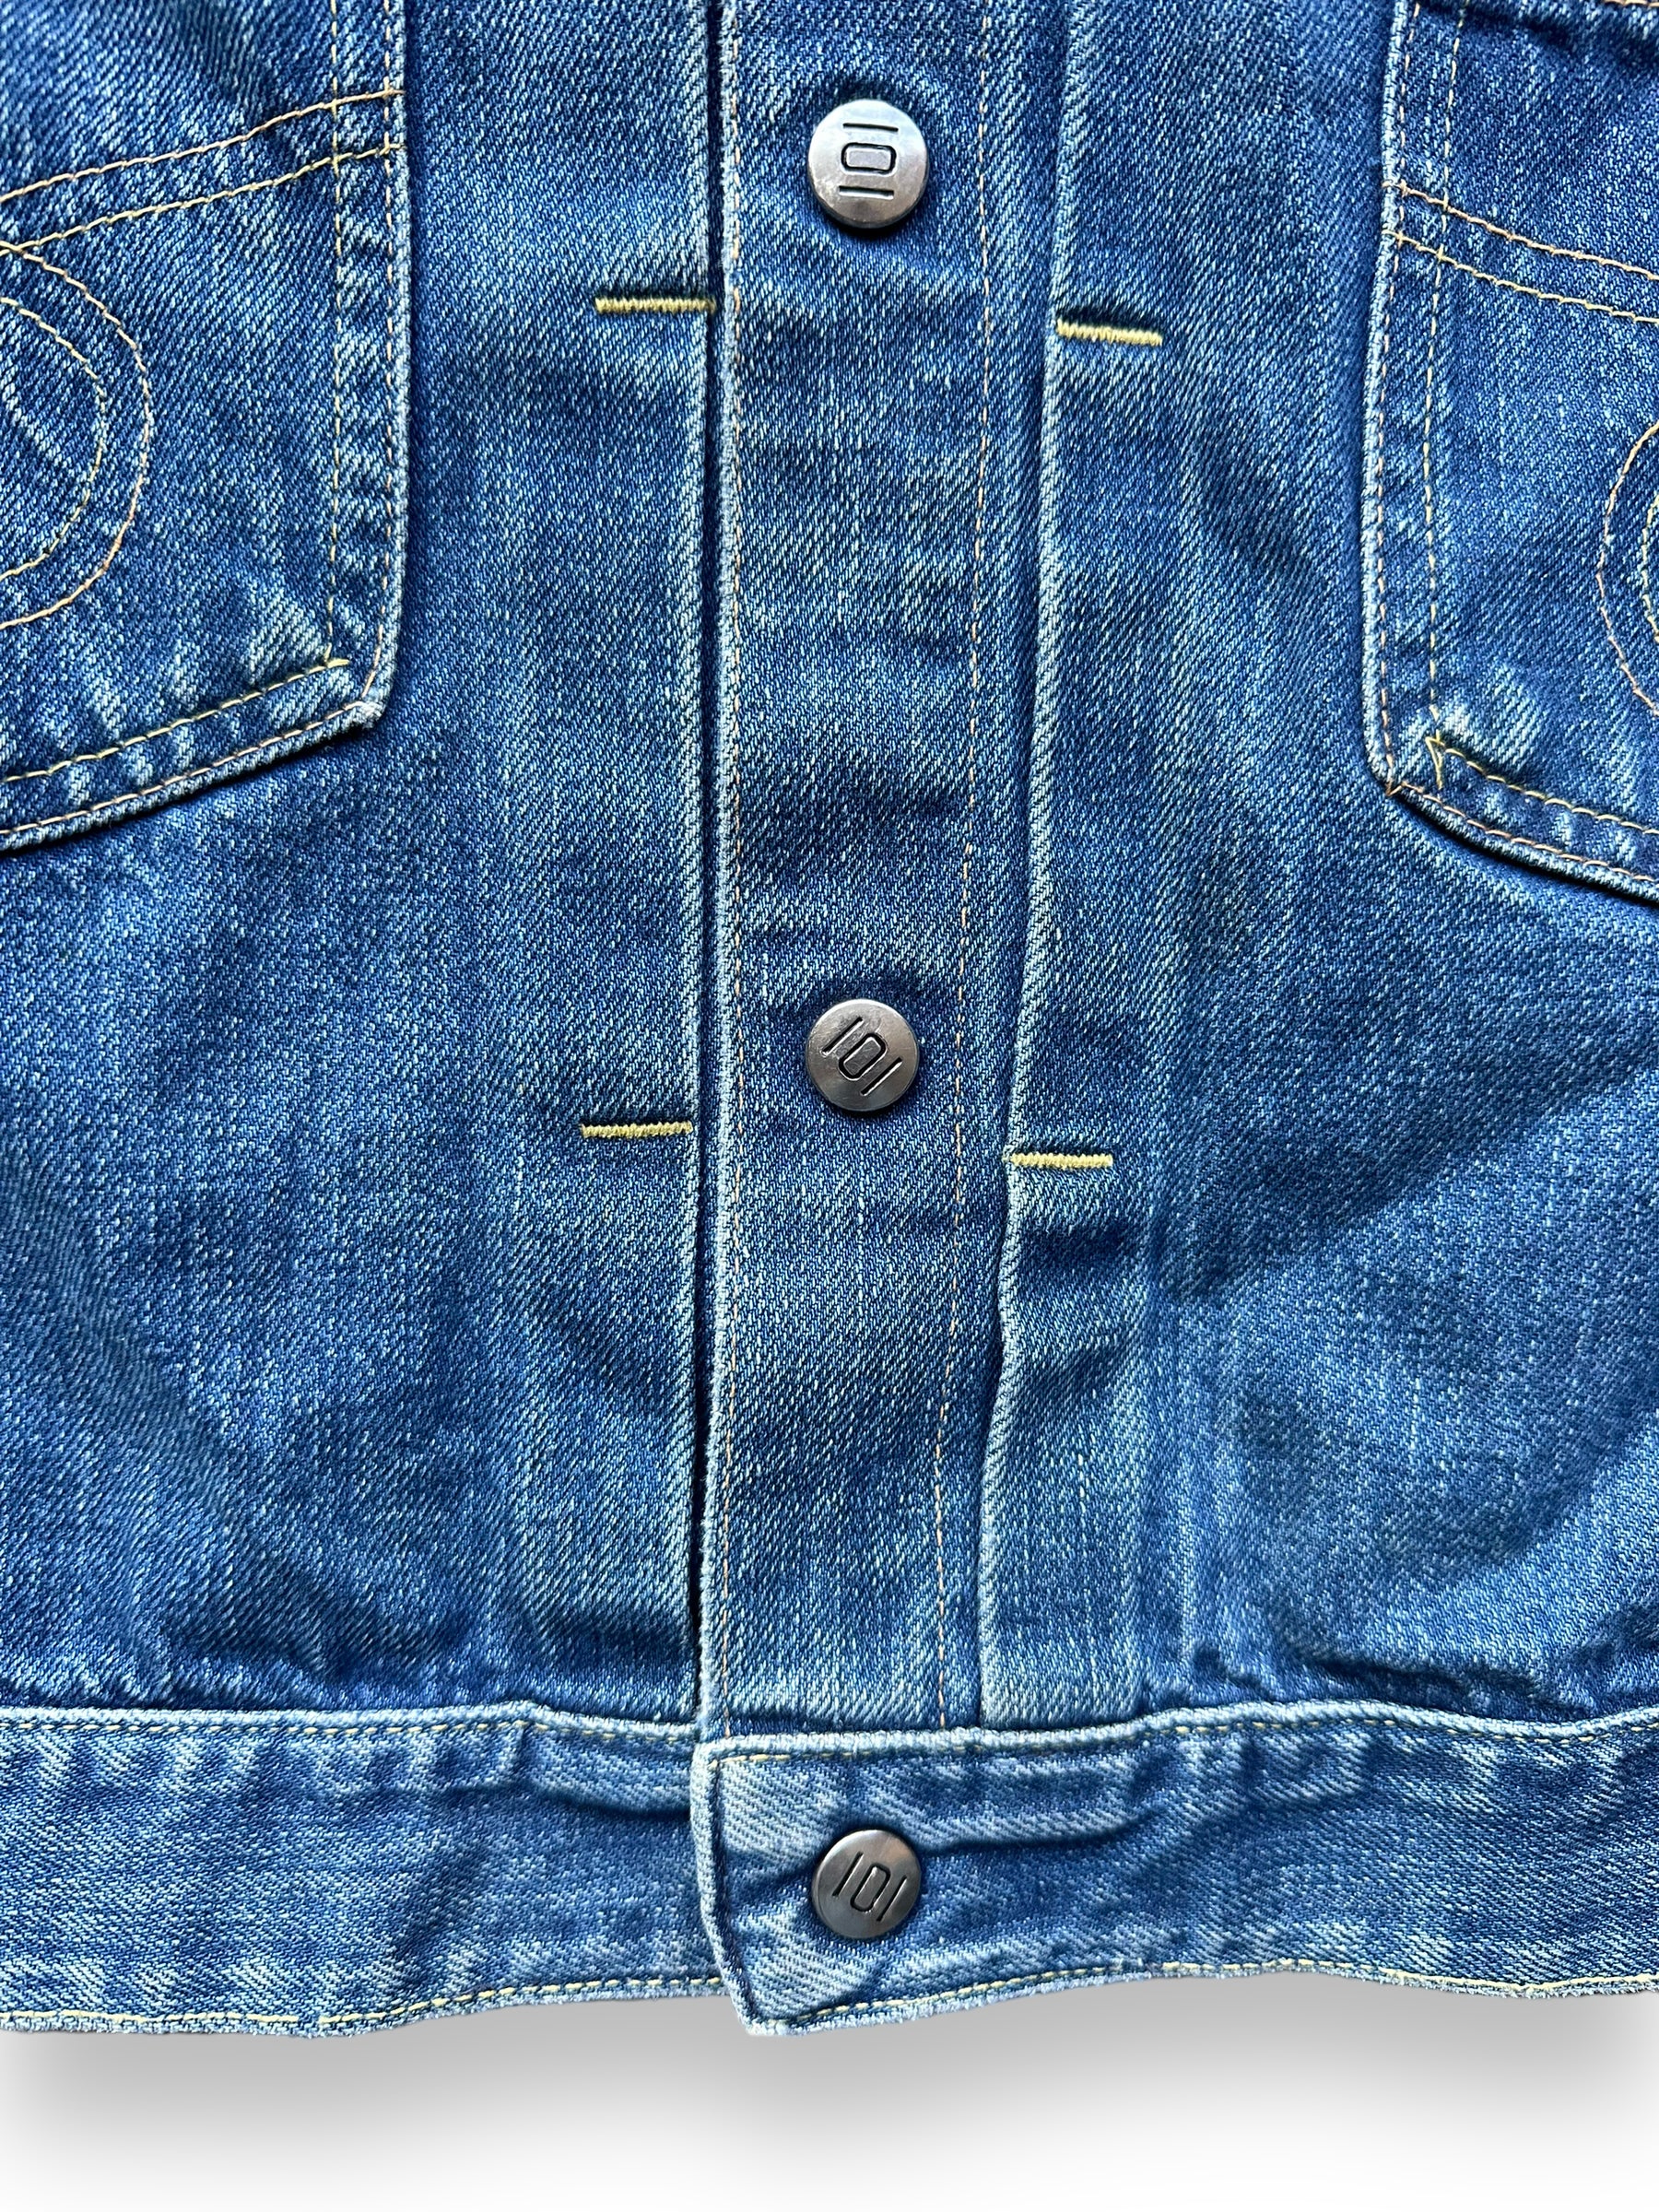 Front Branded Snaps on Vintage Montgomery Ward 101 Selvedge Denim Jacket SZ S | Vintage Jean Jacket Seattle | Seattle Vintage Denim